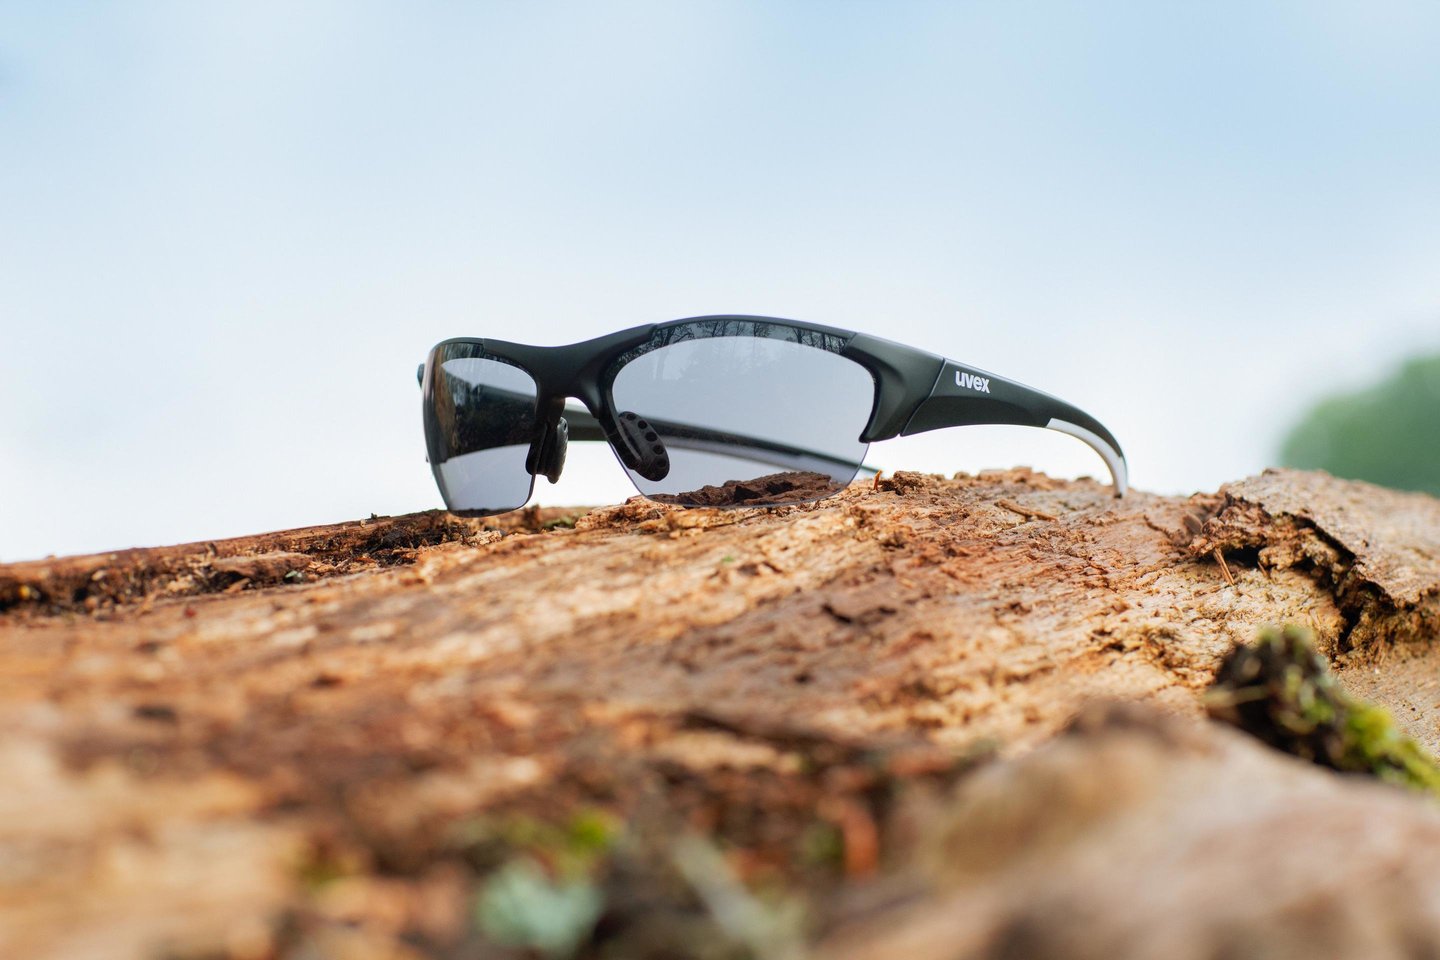 Pagrindinis akinių, kurių pagrindinė funkcija – apsaugoti akis nuo vėjo, lietaus ar vabzdžių, skirtumas – stiklai:<br>Bikko.lt nuotr.